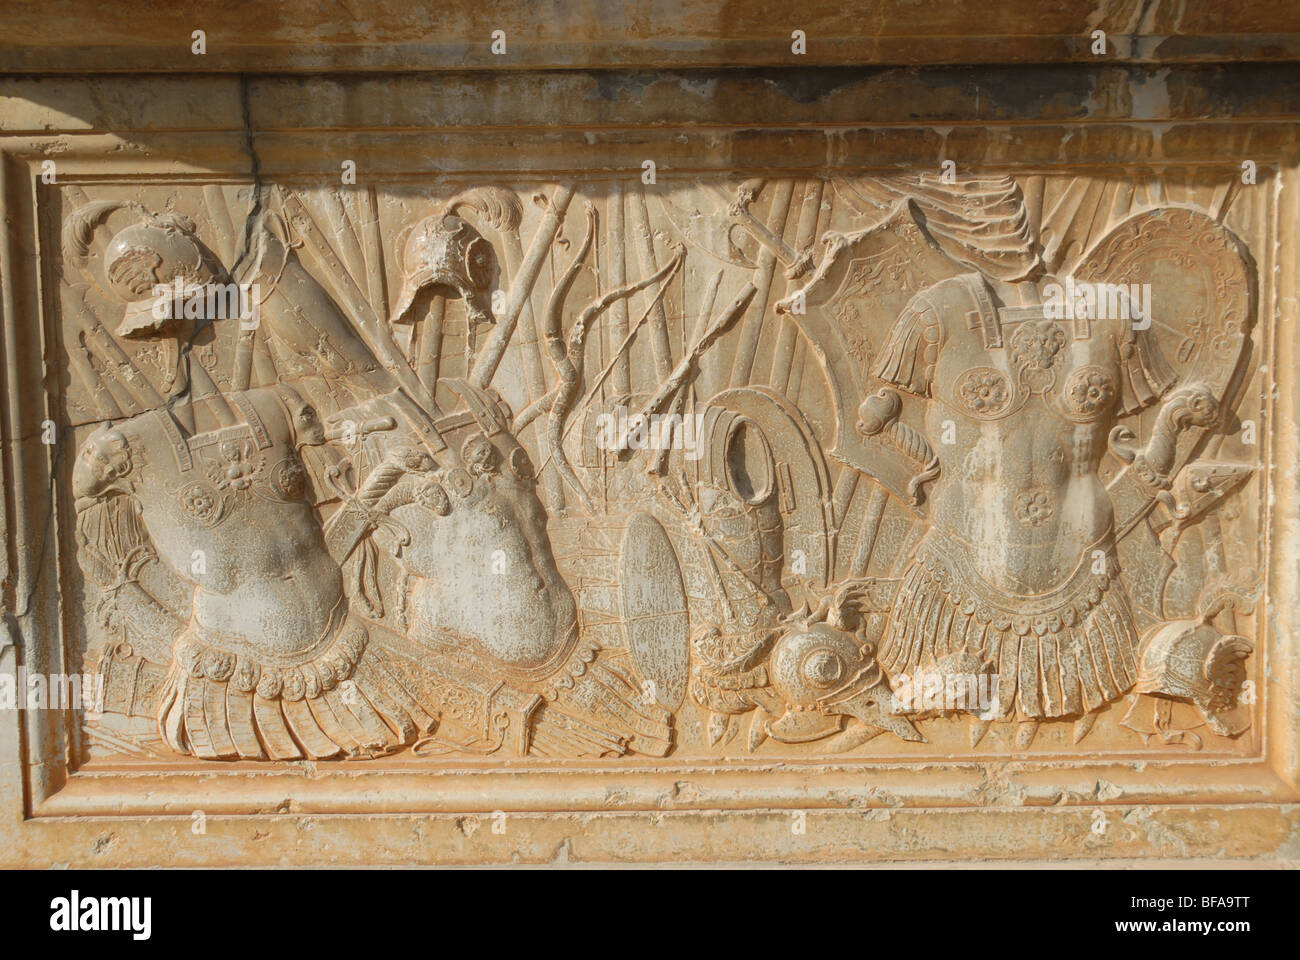 Bas-relief sur le socle du pied, façade sud Palais Carlos V (Palais de Charles Quint), le Palais de l'Alhambra, Grenade, Andalousie, Espagne Banque D'Images